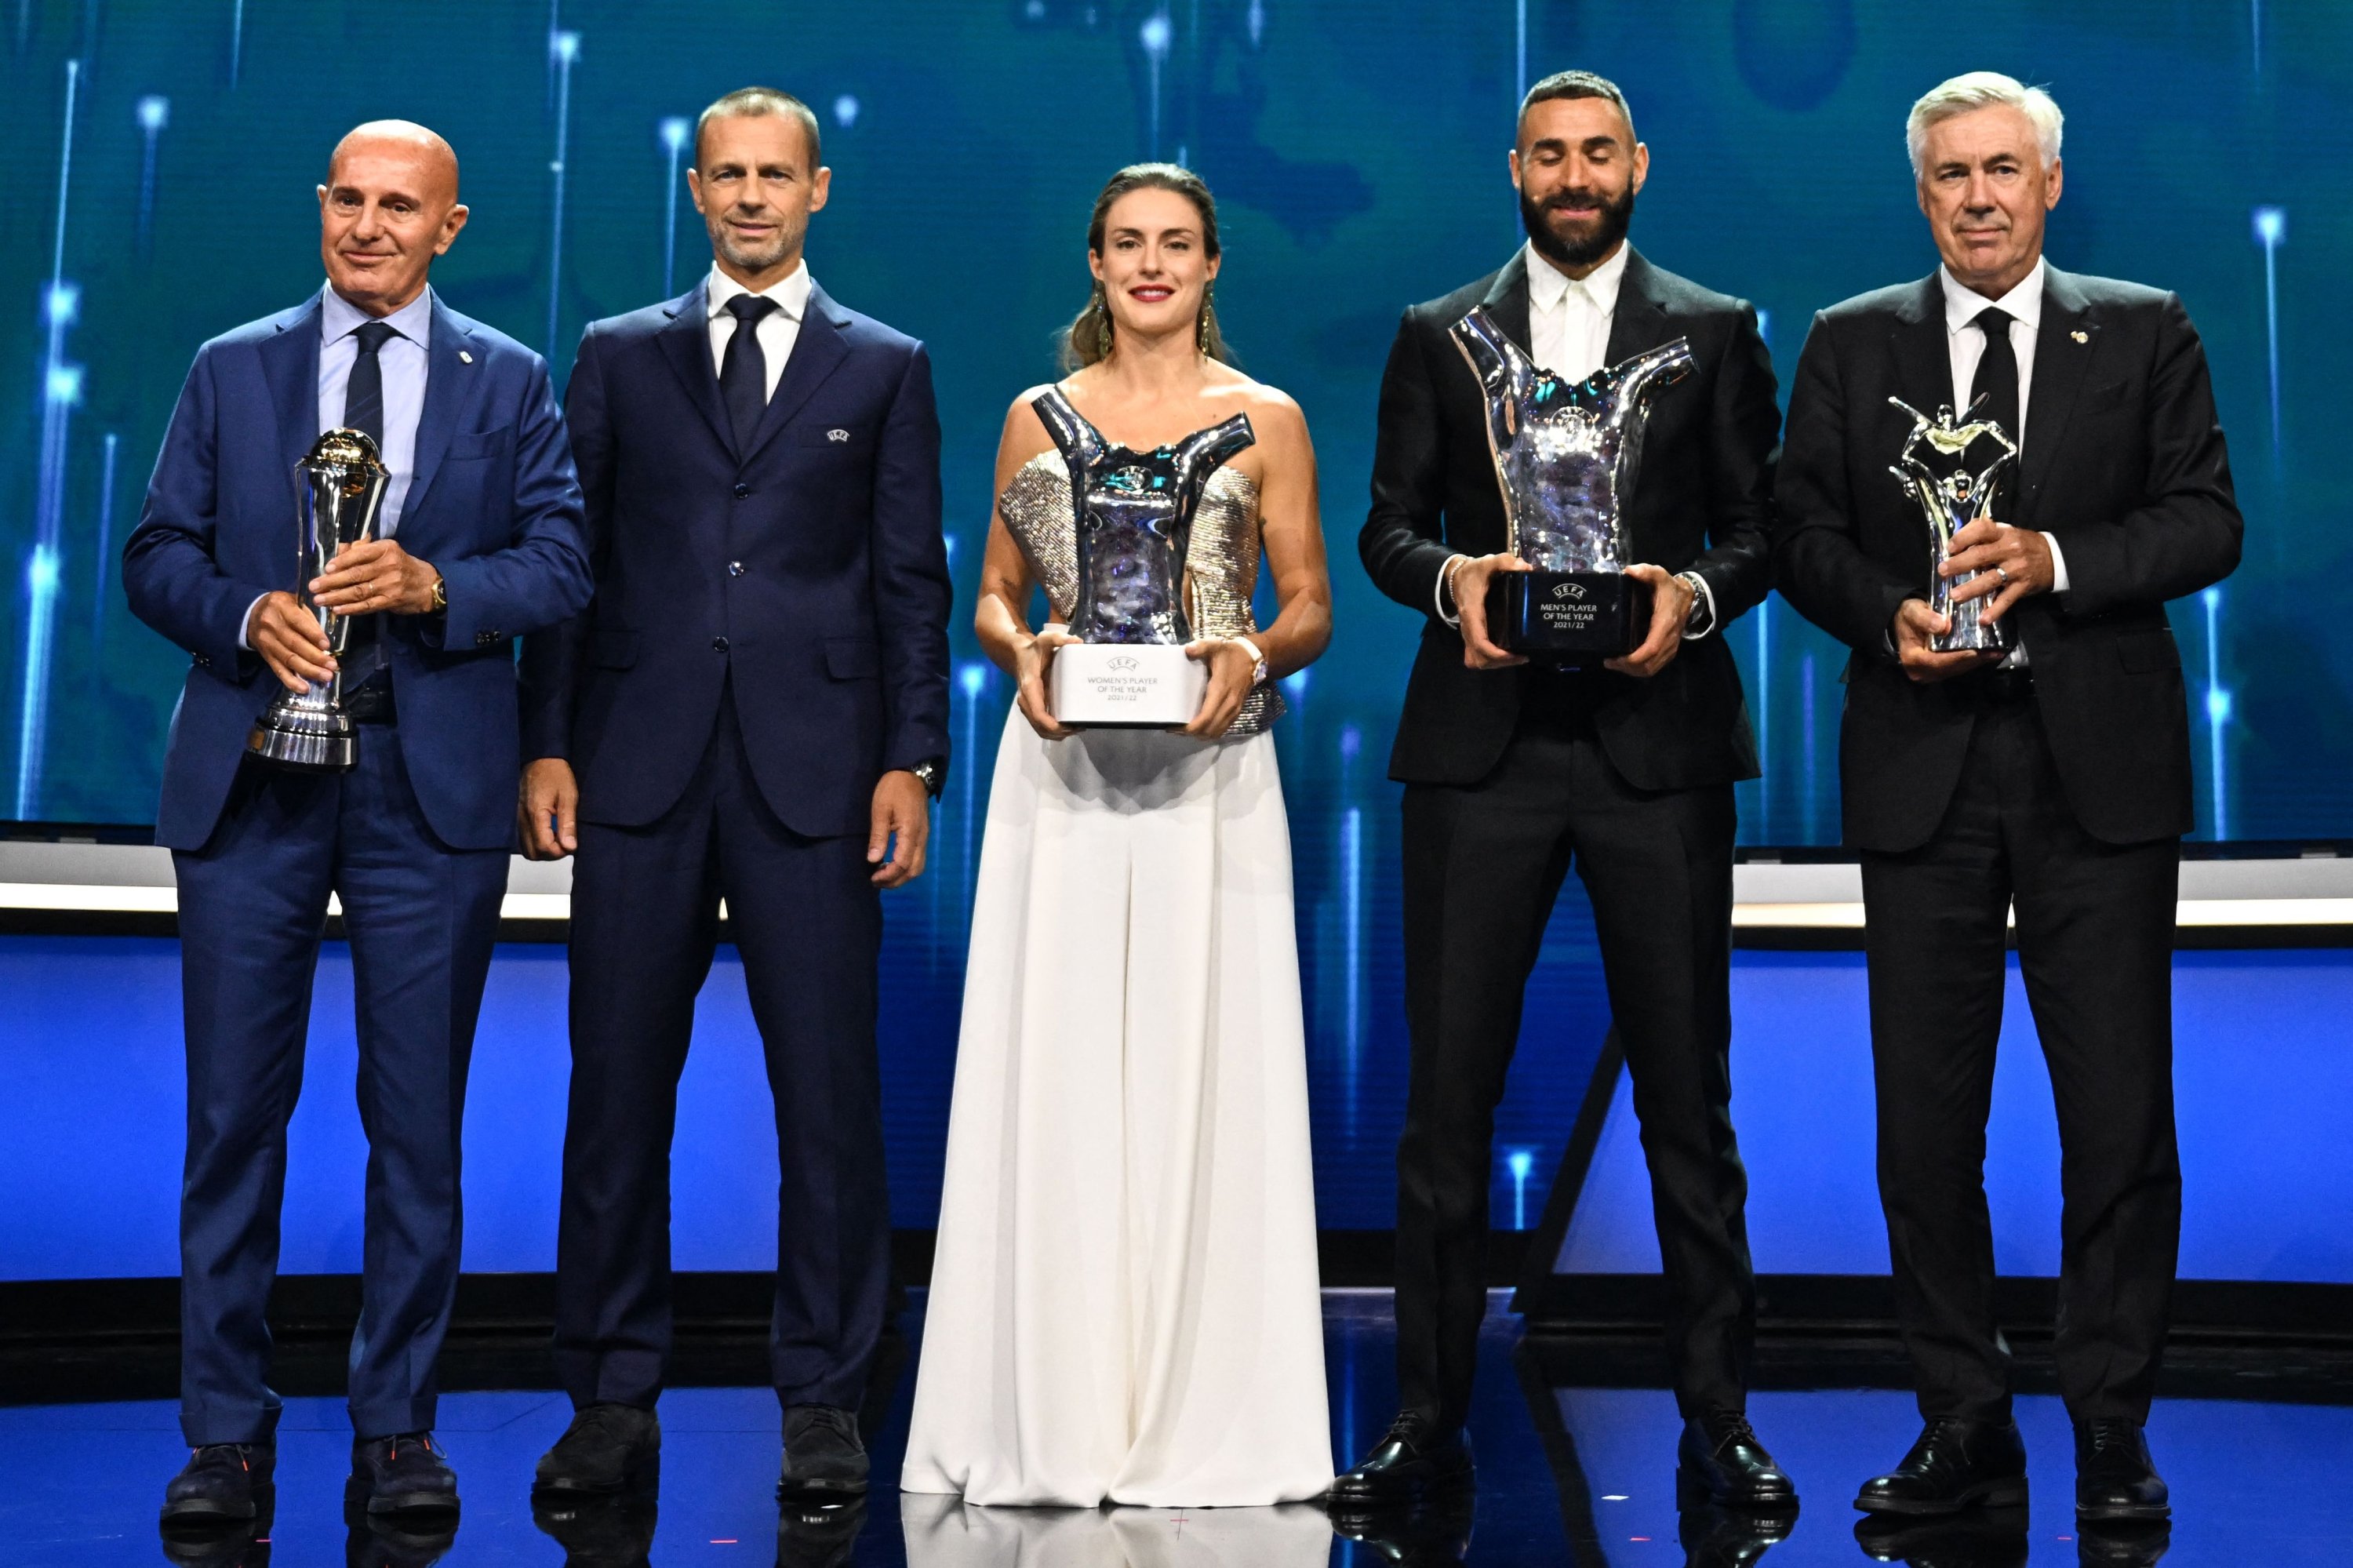 España domina los premios de la UEFA con Benzema, Ancelotti y Butellas